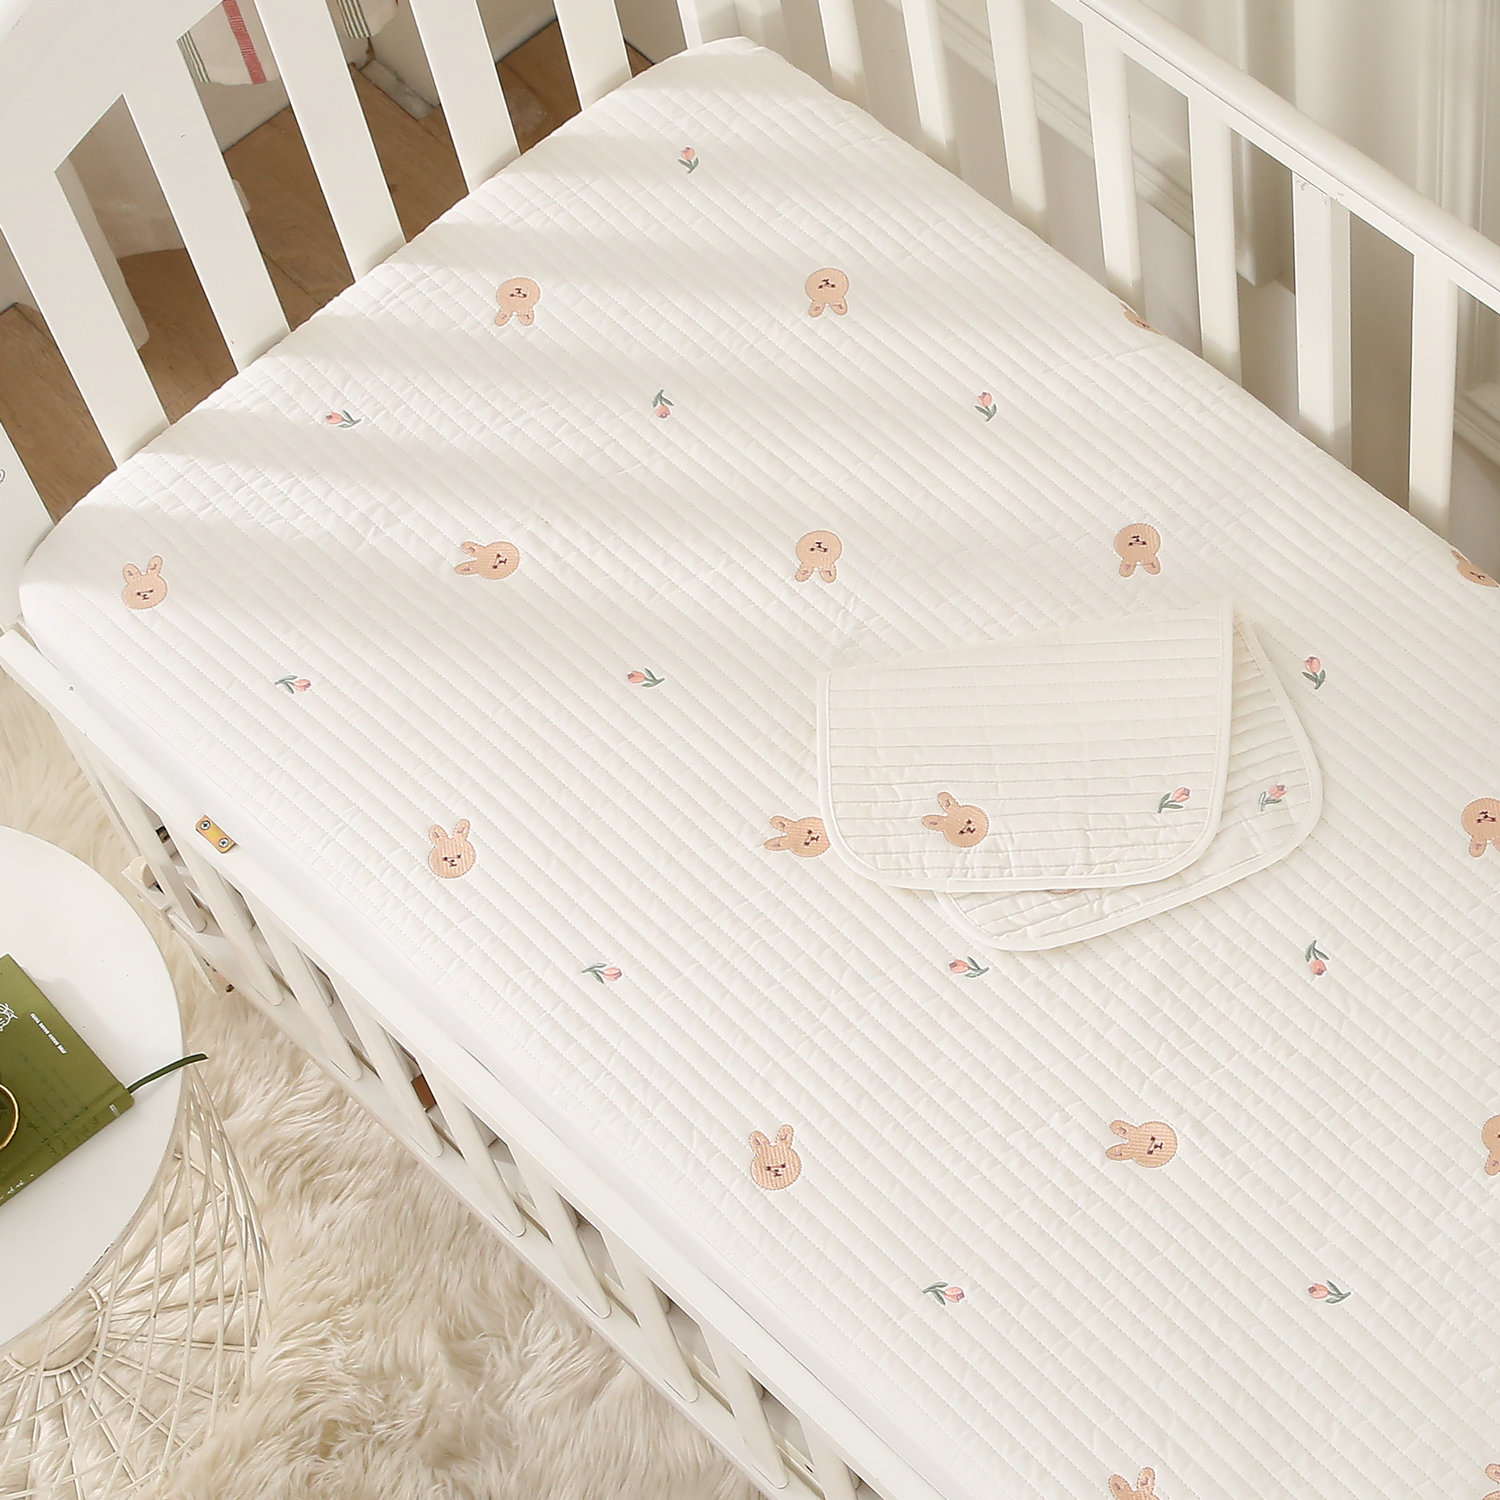 婴儿床床笠宝宝床单新生儿床上用品幼儿园拼接床垫套定制纯棉a类